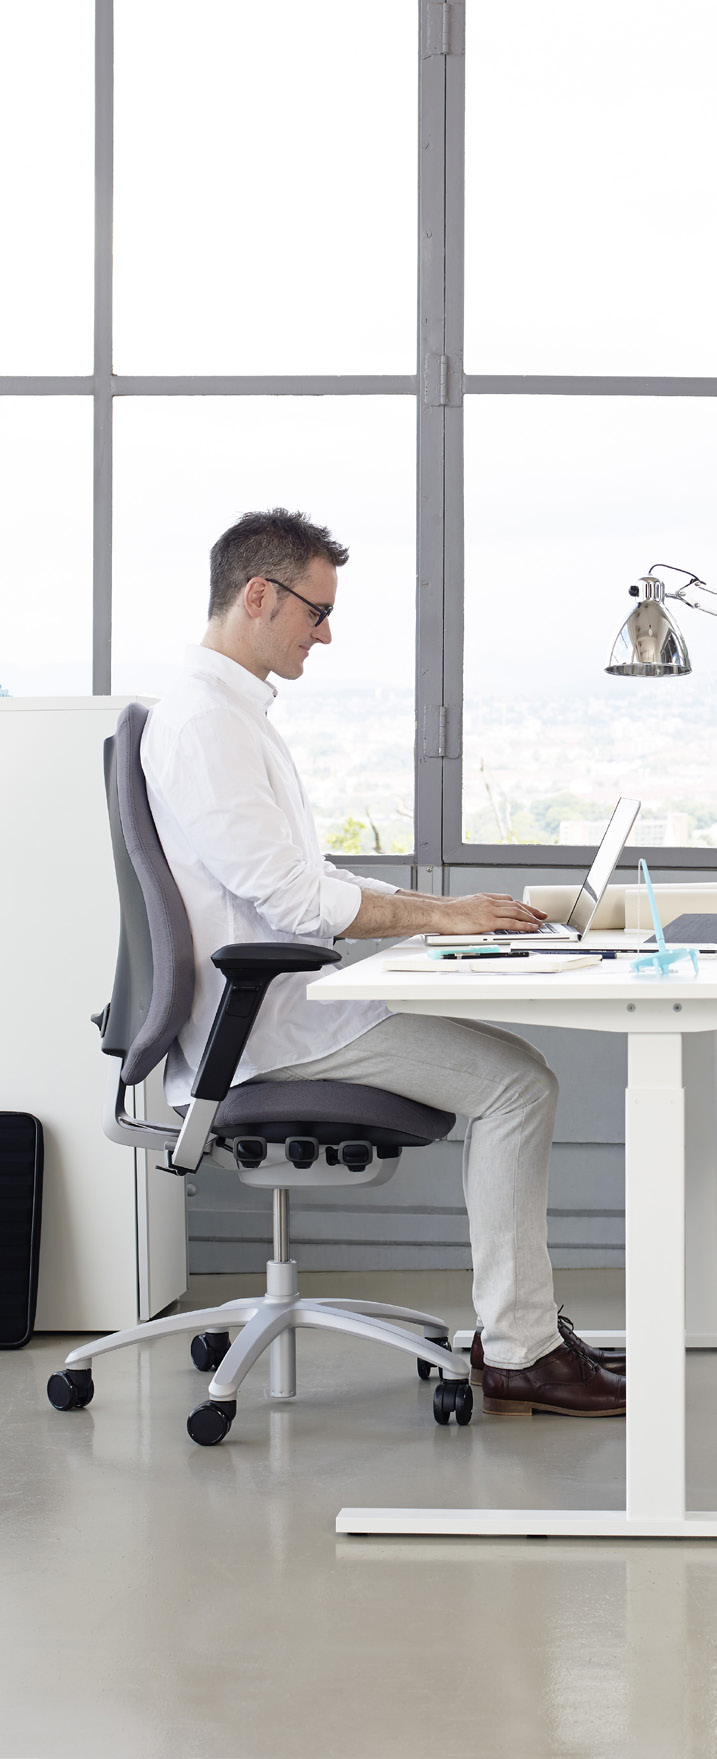 2PP ist aktives Sitzen Moderne Arbeitsplätze sind immer stärker mit Schreibtischtätigkeiten verbunden.